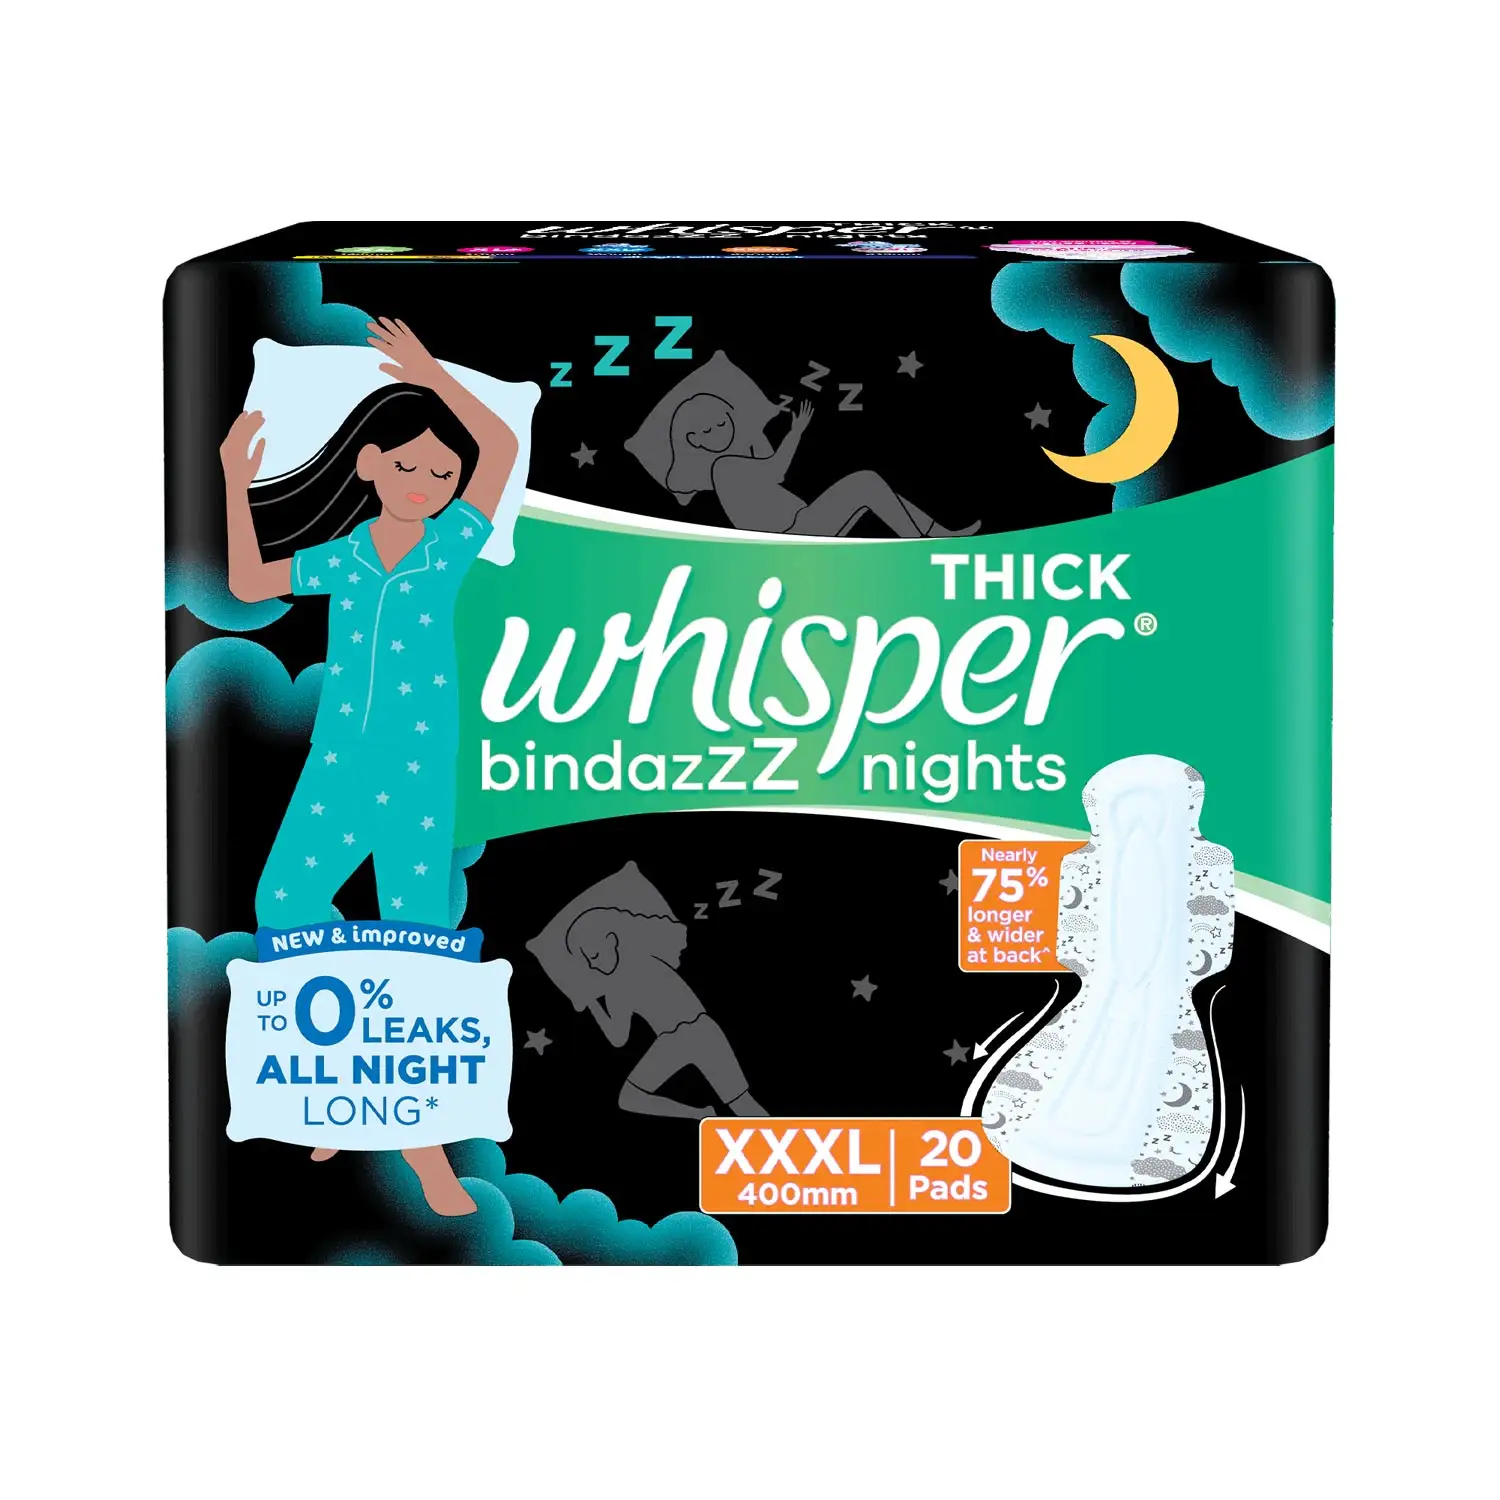 Serviettes hygiéniques Whisper Ultra Clean pour femmes, XL + et serviettes hygiéniques Whisper Ultra Night pour femmes, XXXL +.